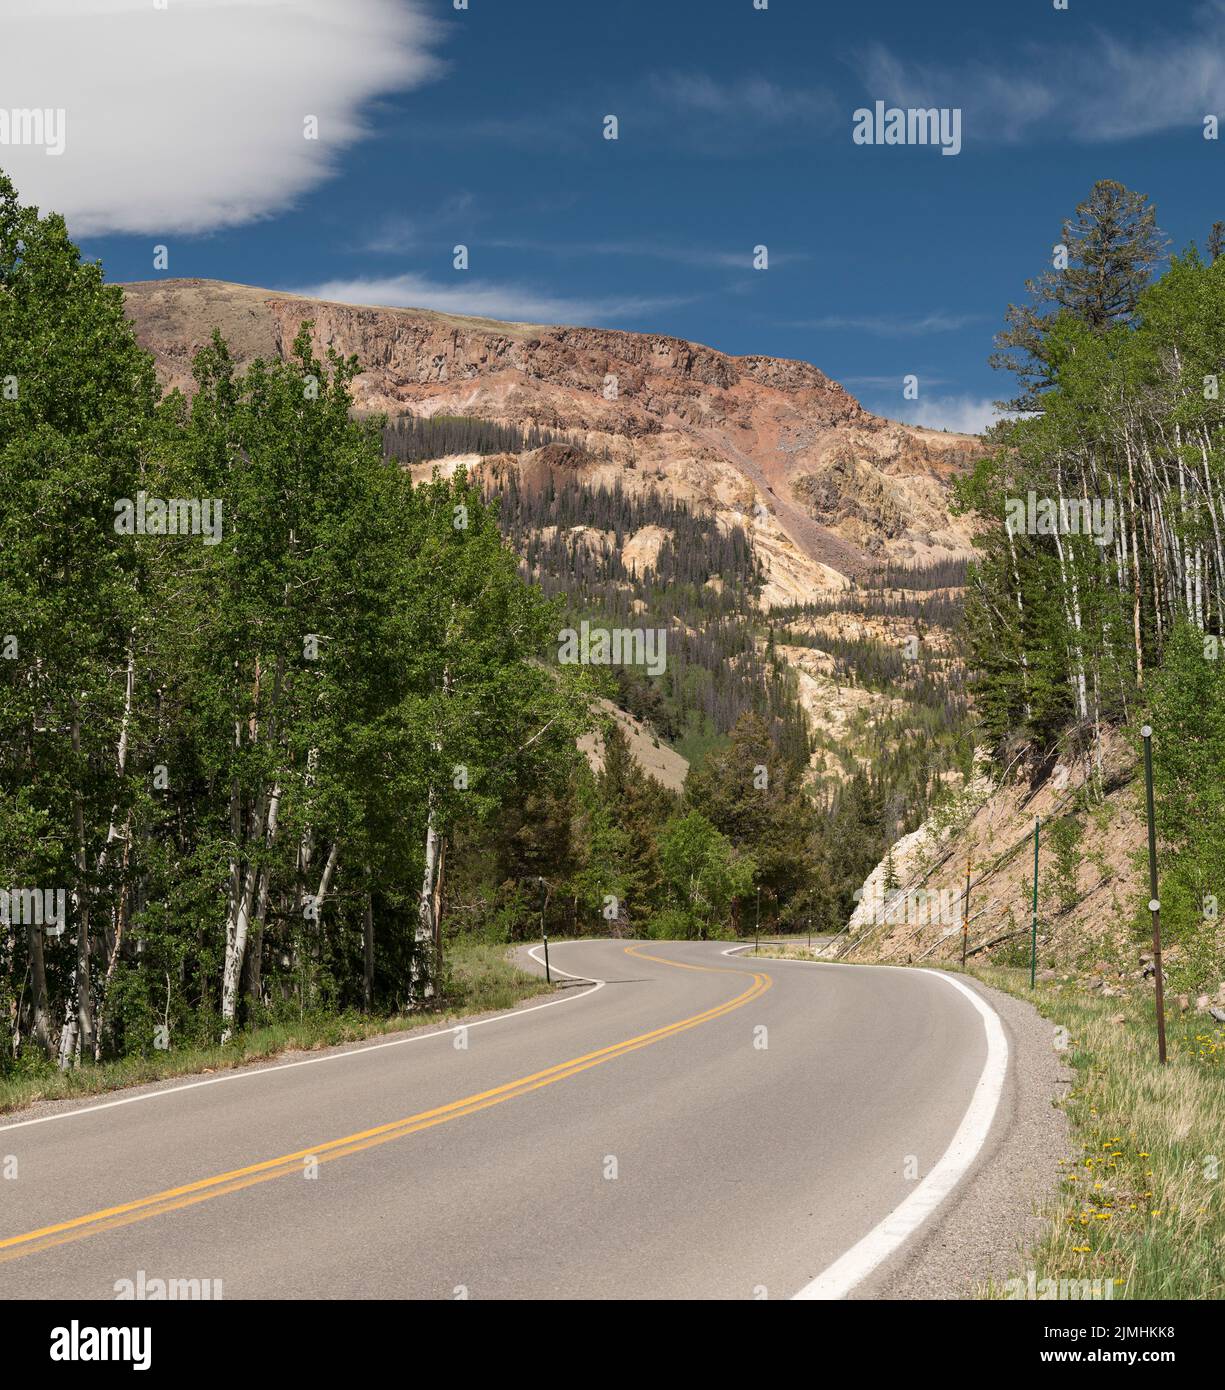 National Natural Landmark Slumgulion Earthflow von Silver Thread Scenic Byway, Colorado aus gesehen. Slumgulion Earthflow ist ein seltener geologischer Prozess. Stockfoto